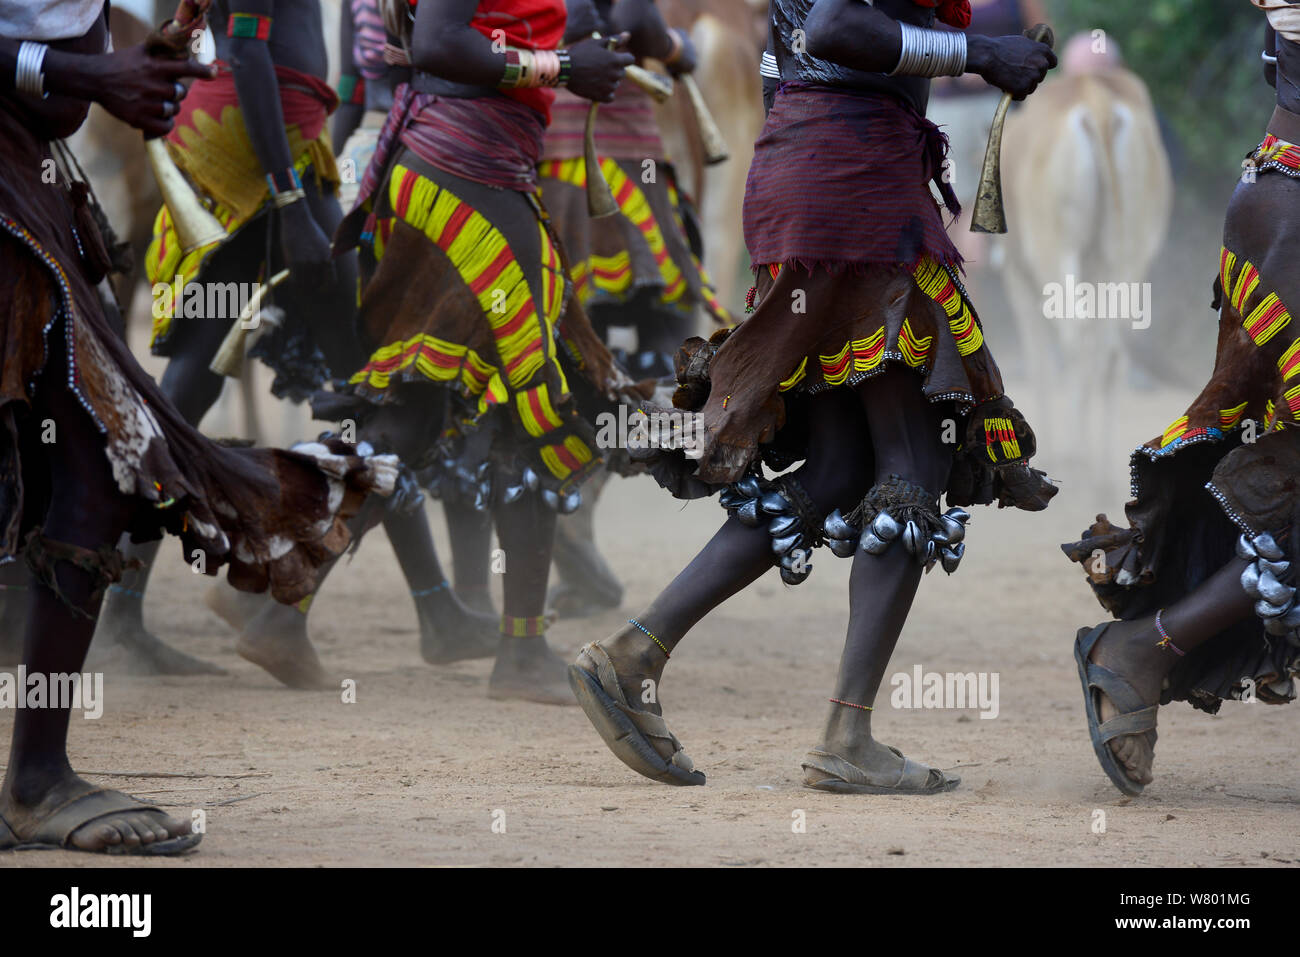 Frauen tanzen im Springen der Bullen Hamer Zeremonie. Diese Zeremonie ist eine Hamer ein Durchgang in die Männlichkeit für Hamer Jungen. Während der Zeremonie junge weibliche Angehörige der jungen gepeitscht werden betteln. Die tieferen ihre Narben, die mehr Liebe, die sie für ihre Jungen zeigen. Äthiopien, November 2014 Stockfoto